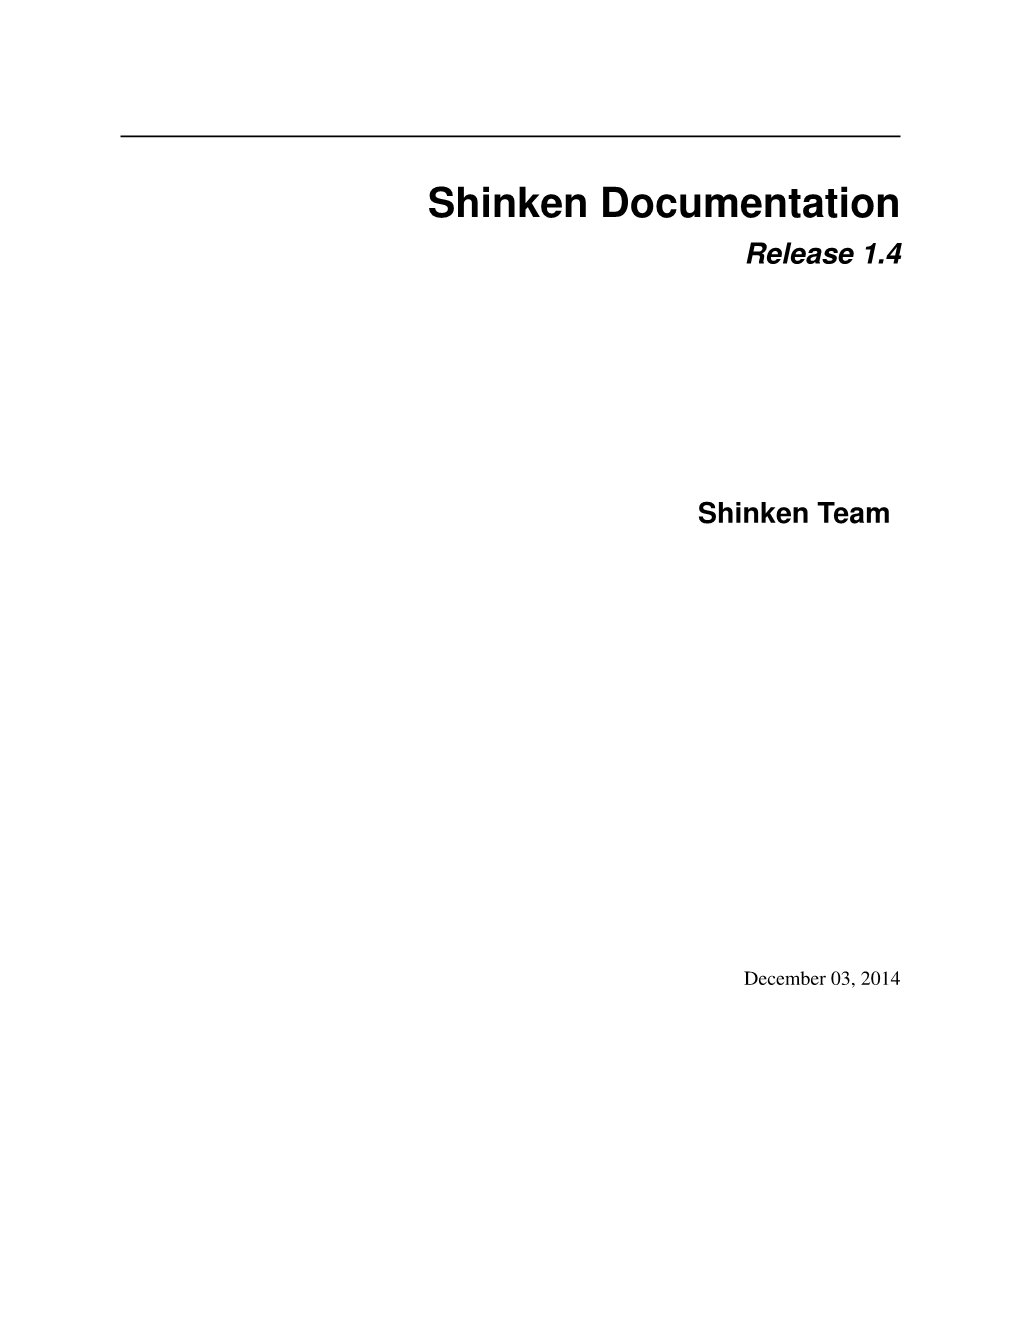 Shinken Documentation Release 1.4